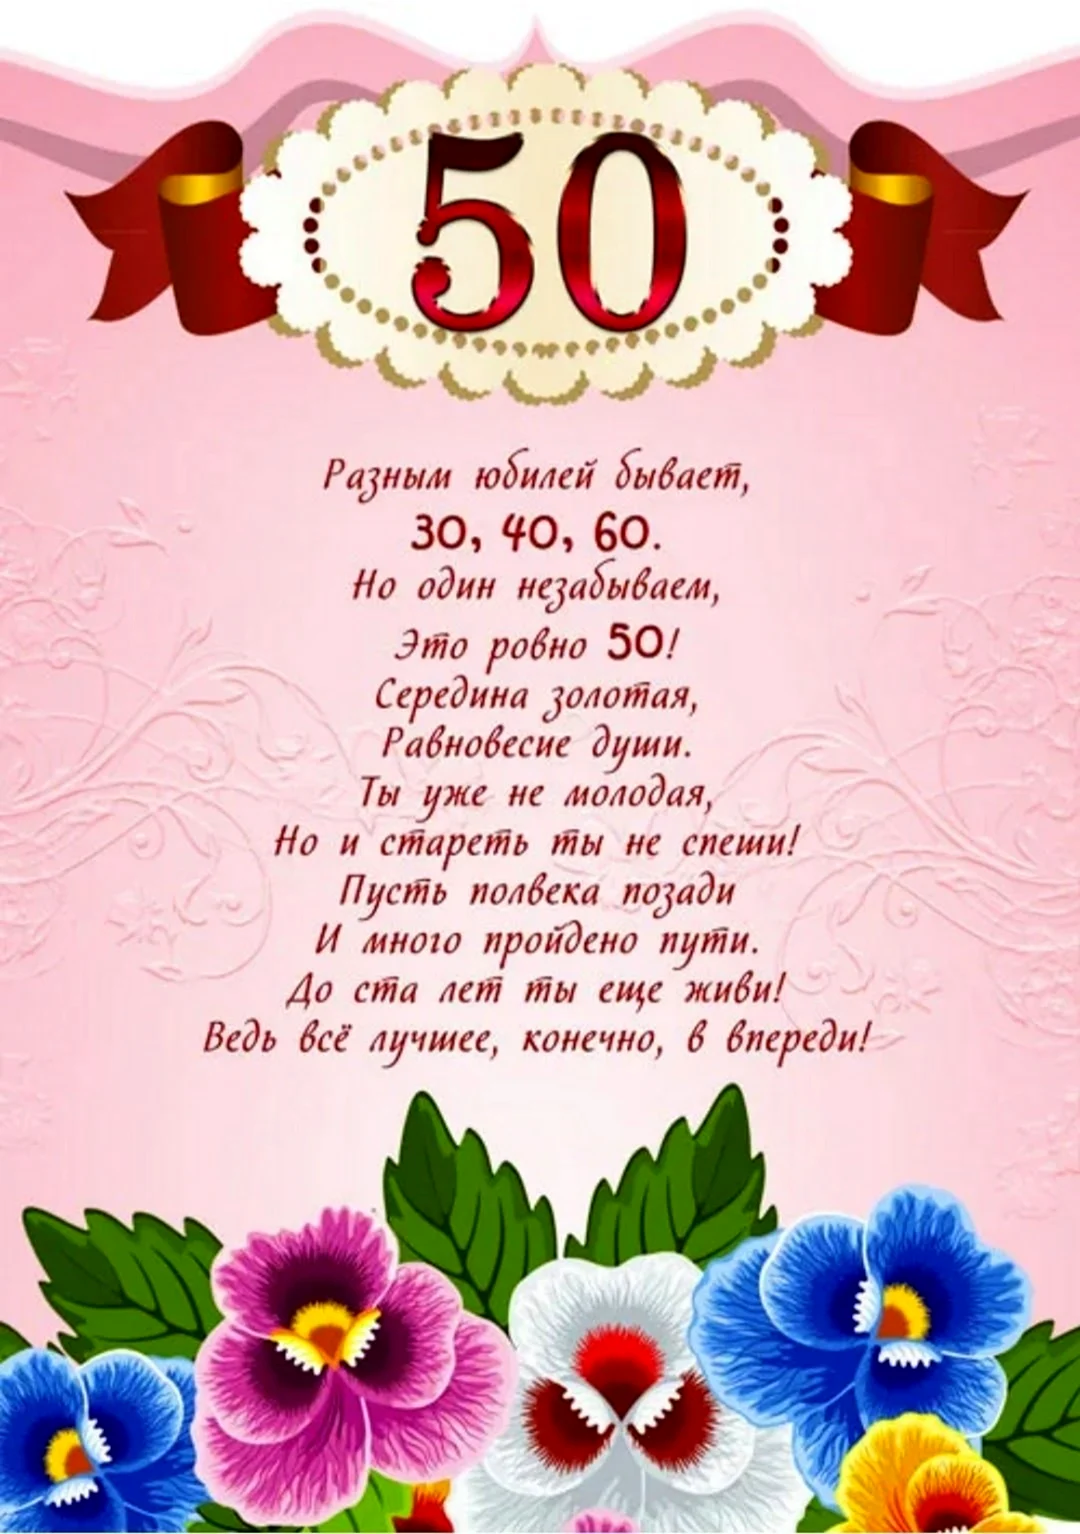 Поздравление с юбилеем 50 лет. Открытка для женщины